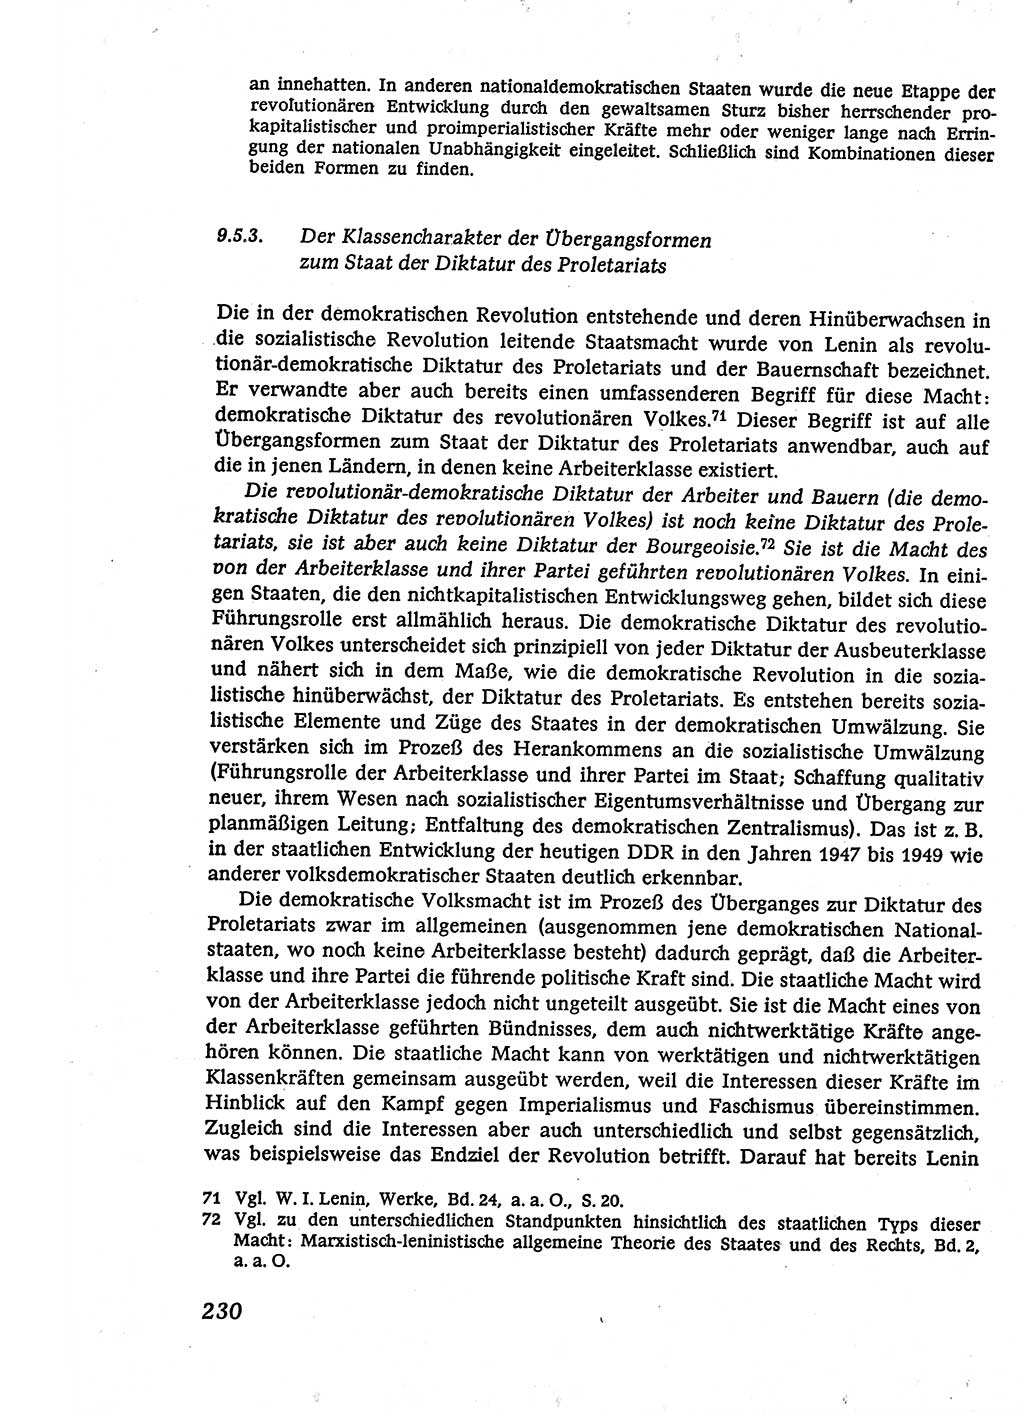 Marxistisch-leninistische (ML) Staats- und Rechtstheorie [Deutsche Demokratische Republik (DDR)], Lehrbuch 1980, Seite 230 (ML St.-R.-Th. DDR Lb. 1980, S. 230)